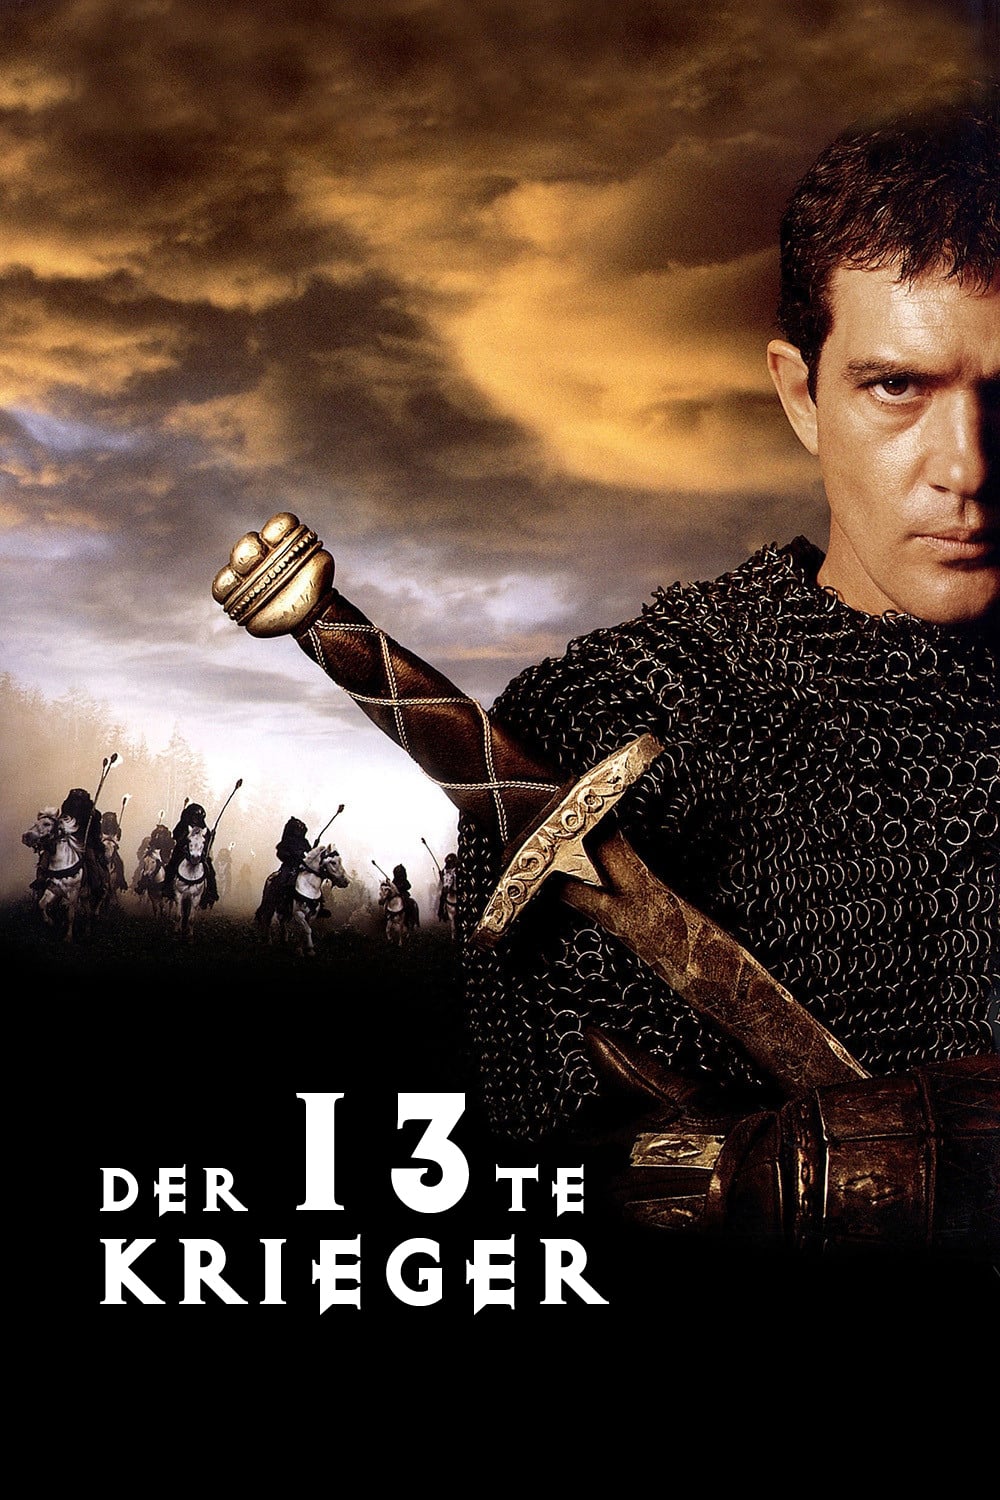 Plakat von "Der 13te Krieger"